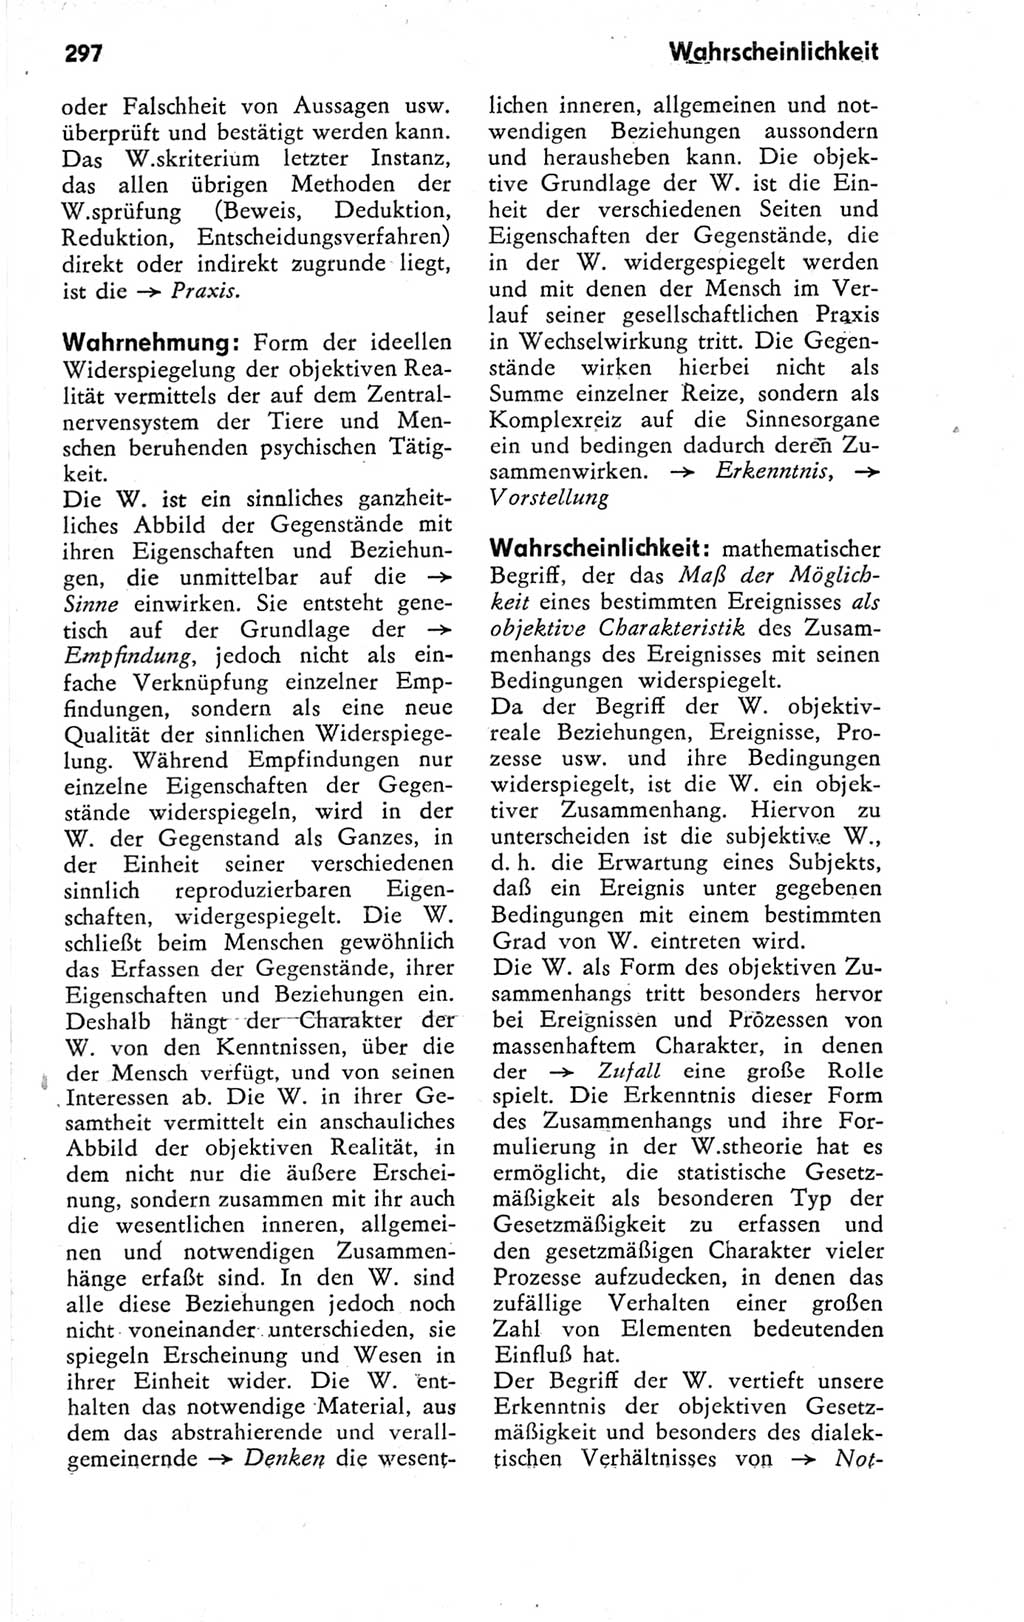 Kleines Wörterbuch der marxistisch-leninistischen Philosophie [Deutsche Demokratische Republik (DDR)] 1974, Seite 297 (Kl. Wb. ML Phil. DDR 1974, S. 297)